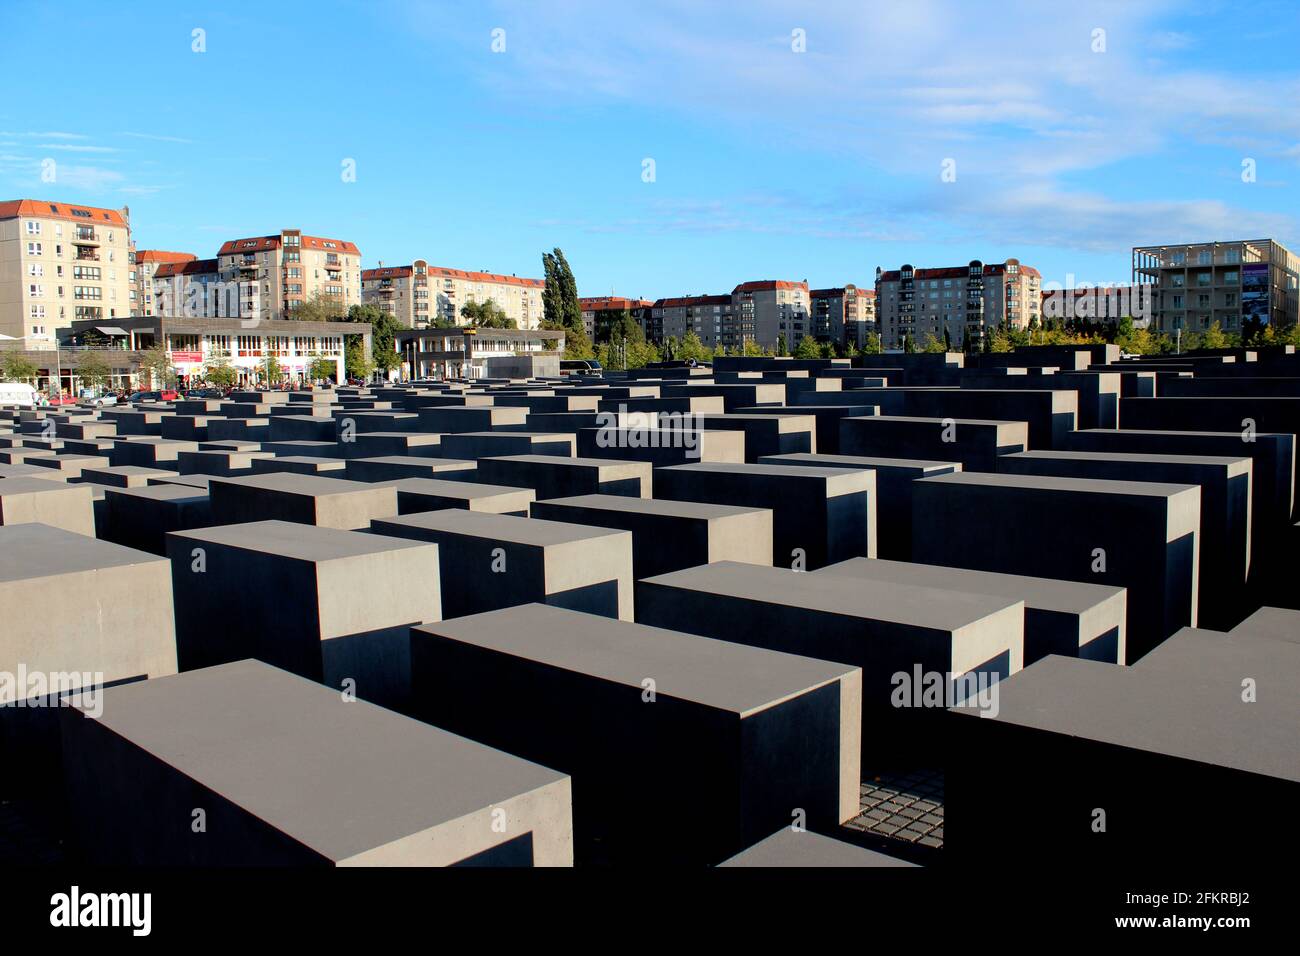 Mémorial aux Juifs d'Europe assassinés à Berlin, en Allemagne. Mémorial de l'Holocauste par Peter Eisenman Banque D'Images